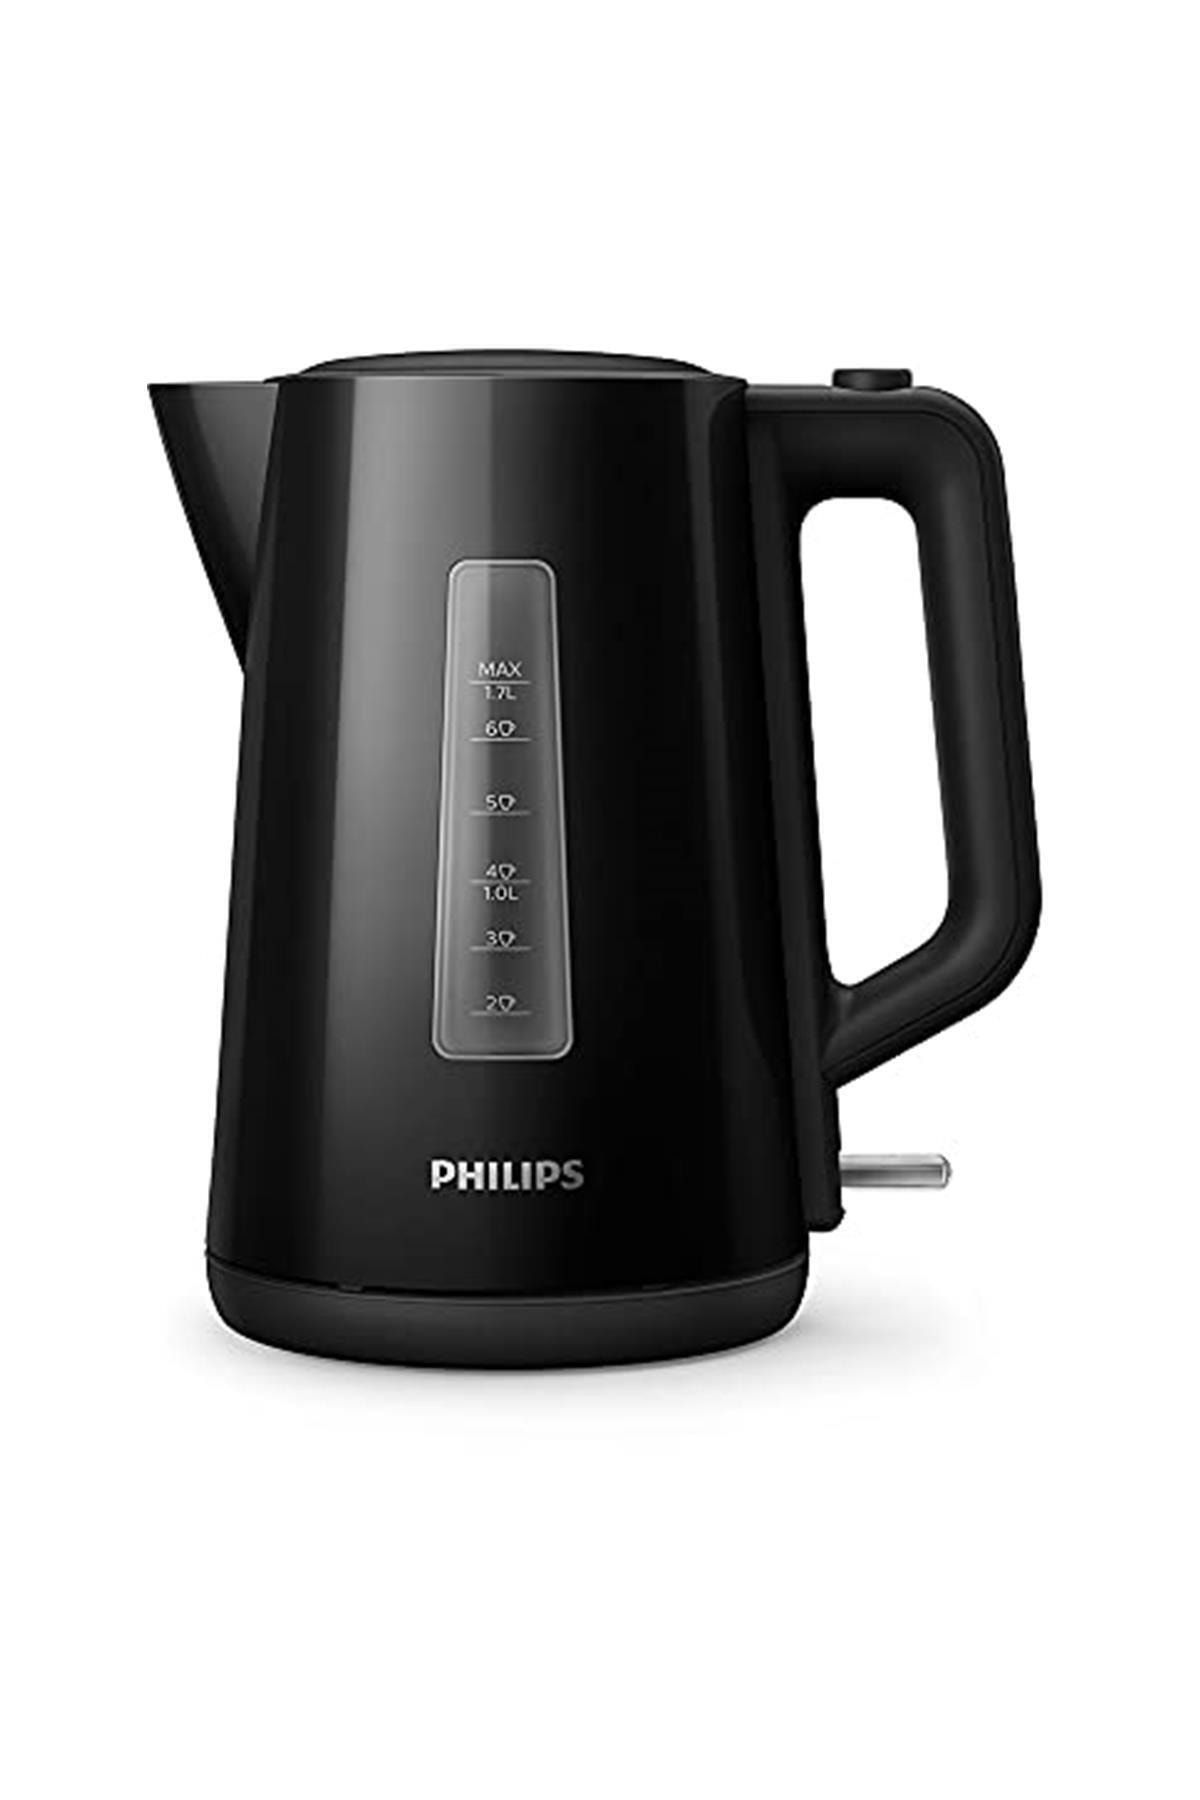 Philips Marka: Hd9318/20 Su Isıtıcı Kategori: Su Isıtıcı&kettle